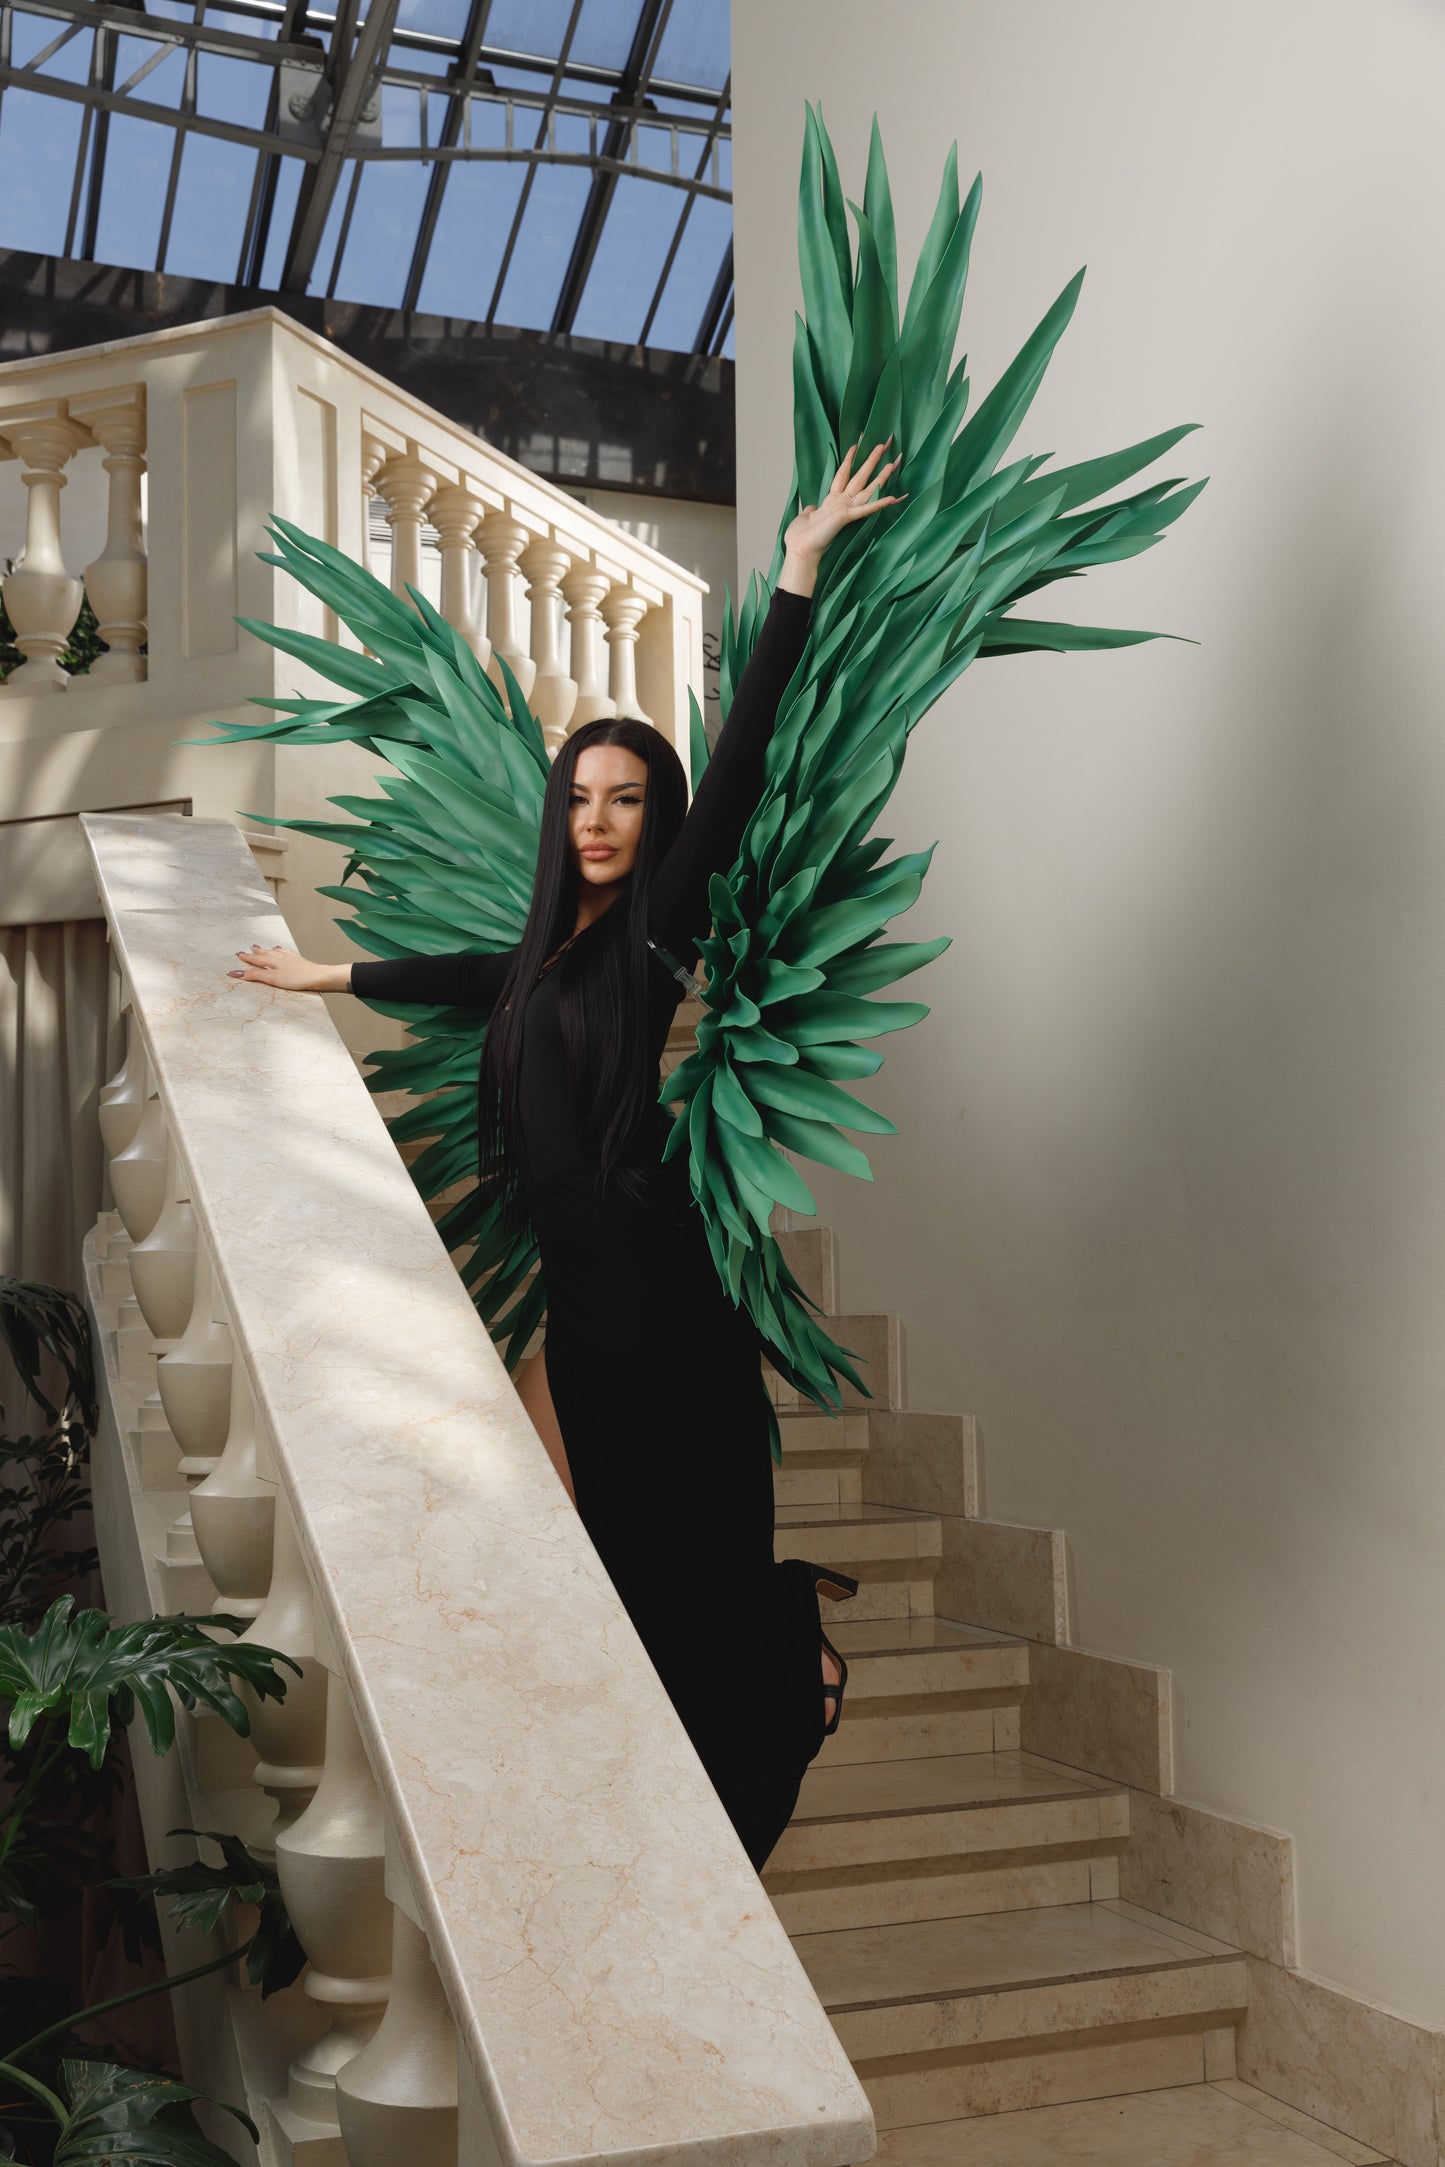 Zielone skrzydła anioła do sesji zdjęciowej "marki Bogacci"